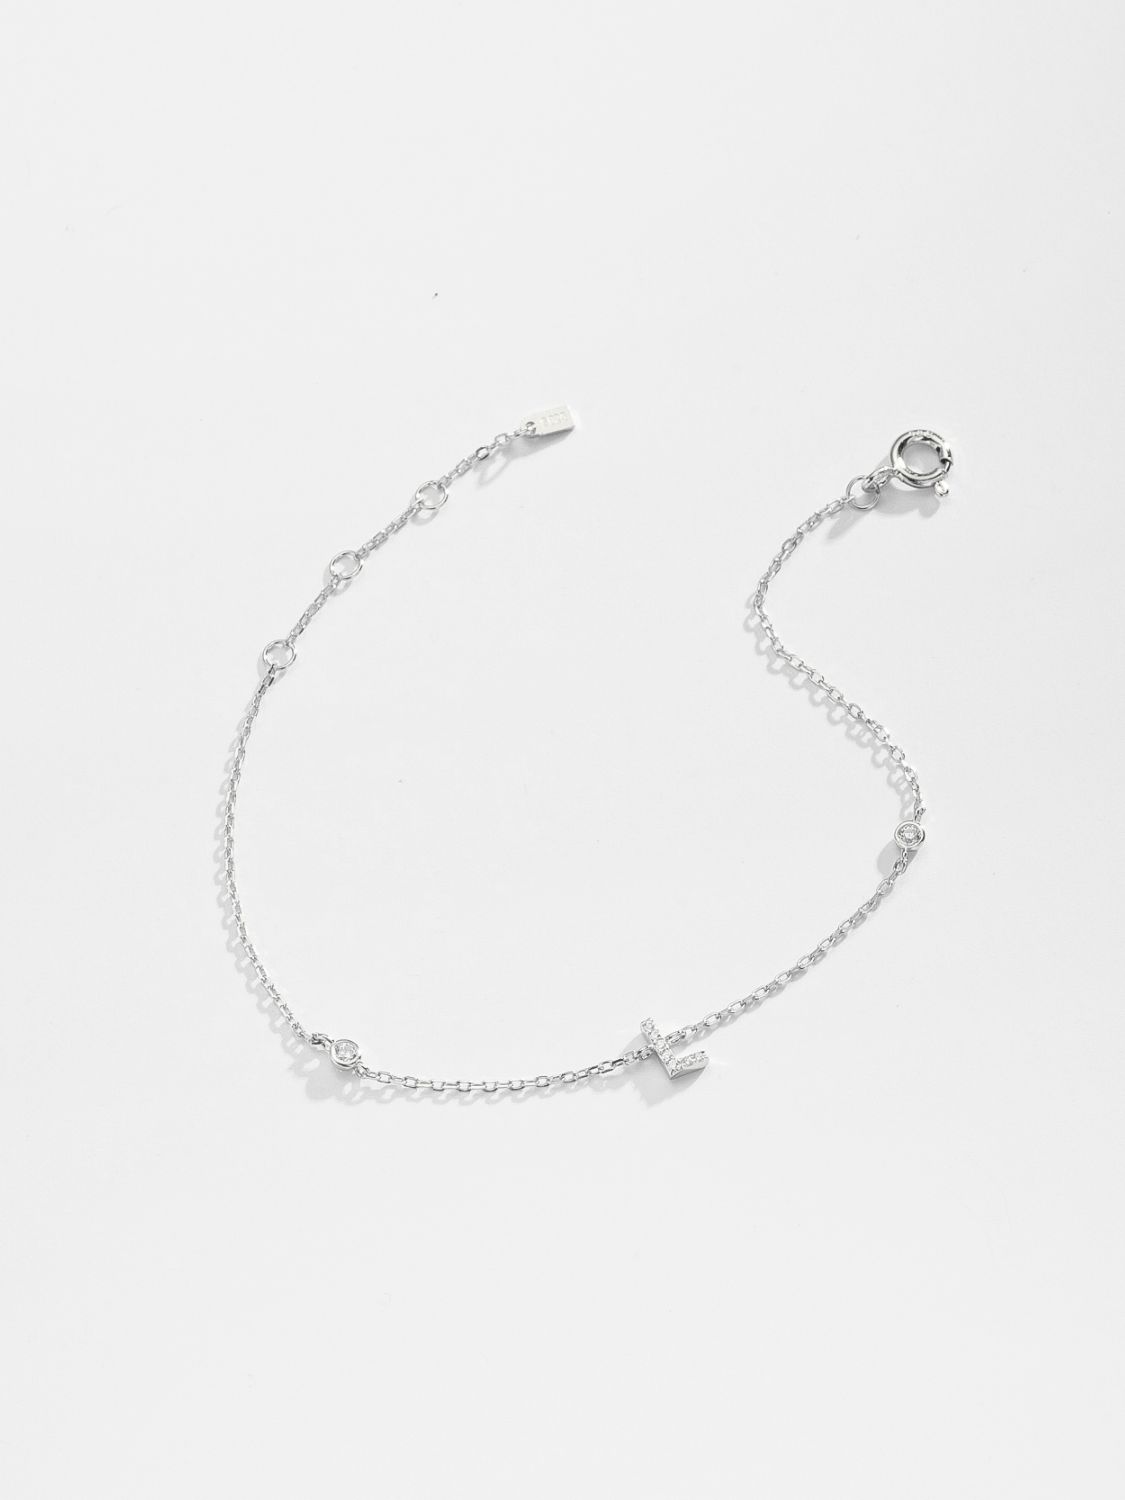 L To P Zircon 925 Sterling Silver Bracelet - Women’s Jewelry - Bracelets - 5 - 2024